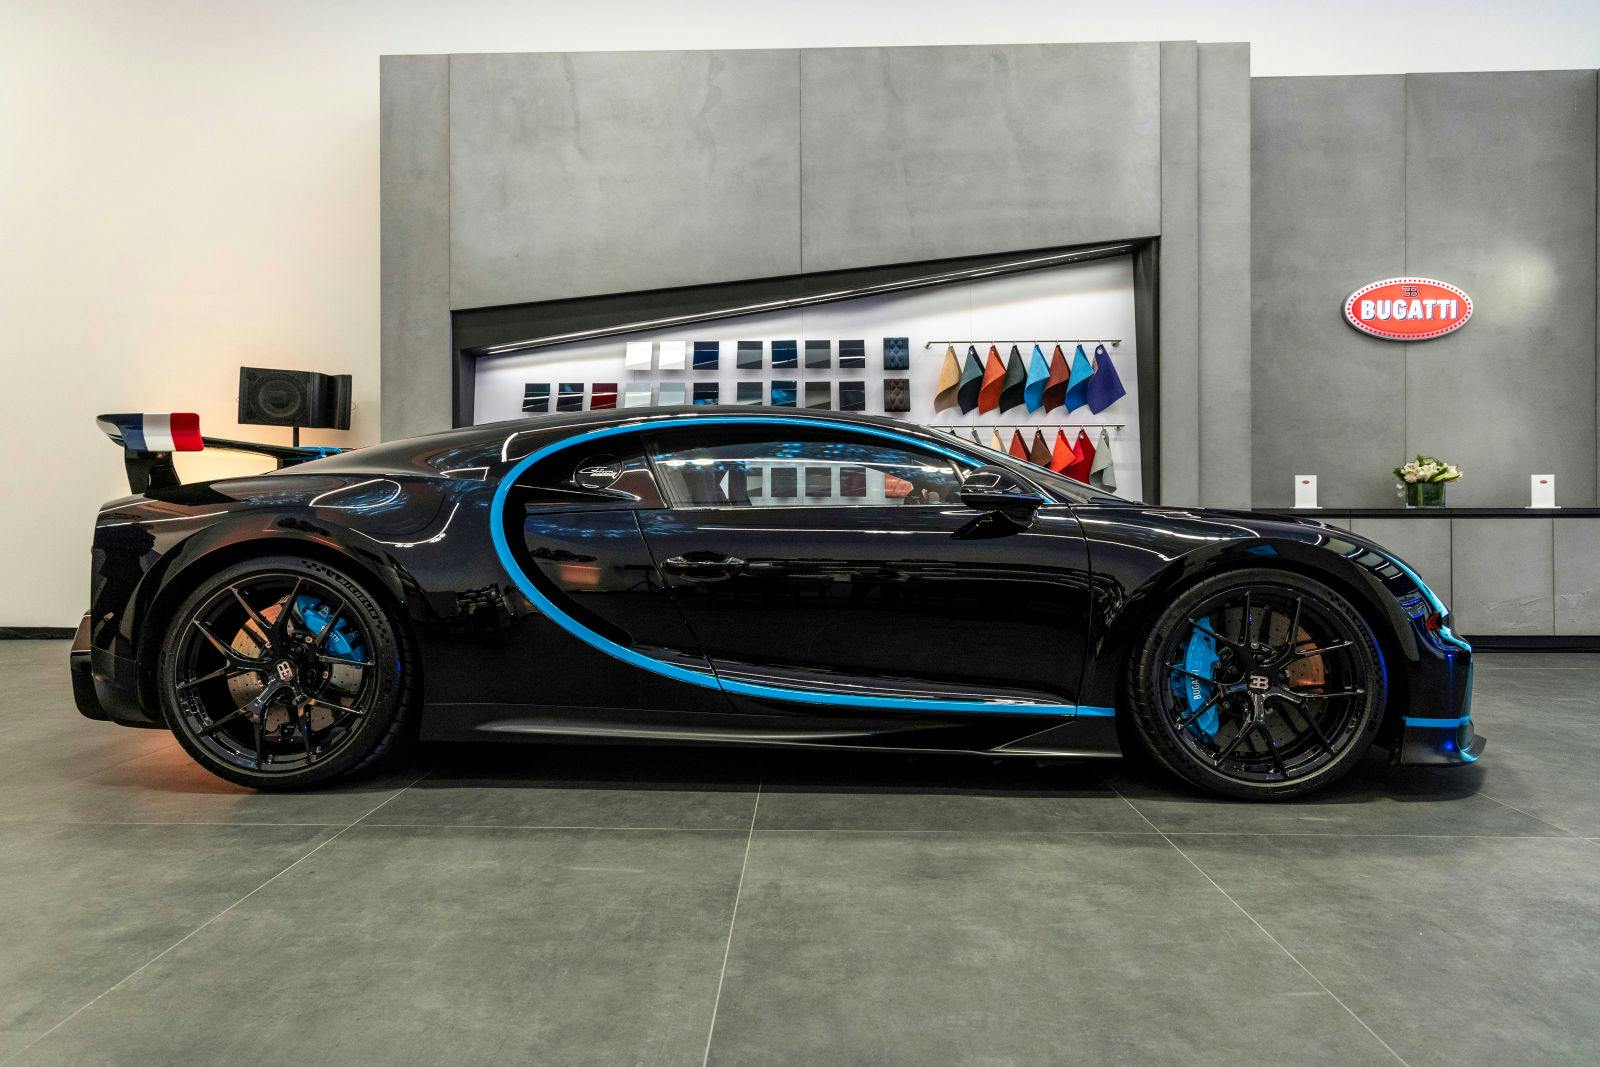 Bugatti ouvre son nouveau showroom au Moyen-Orient à Riyadh, en partenariat avec SAMACO Automotive.